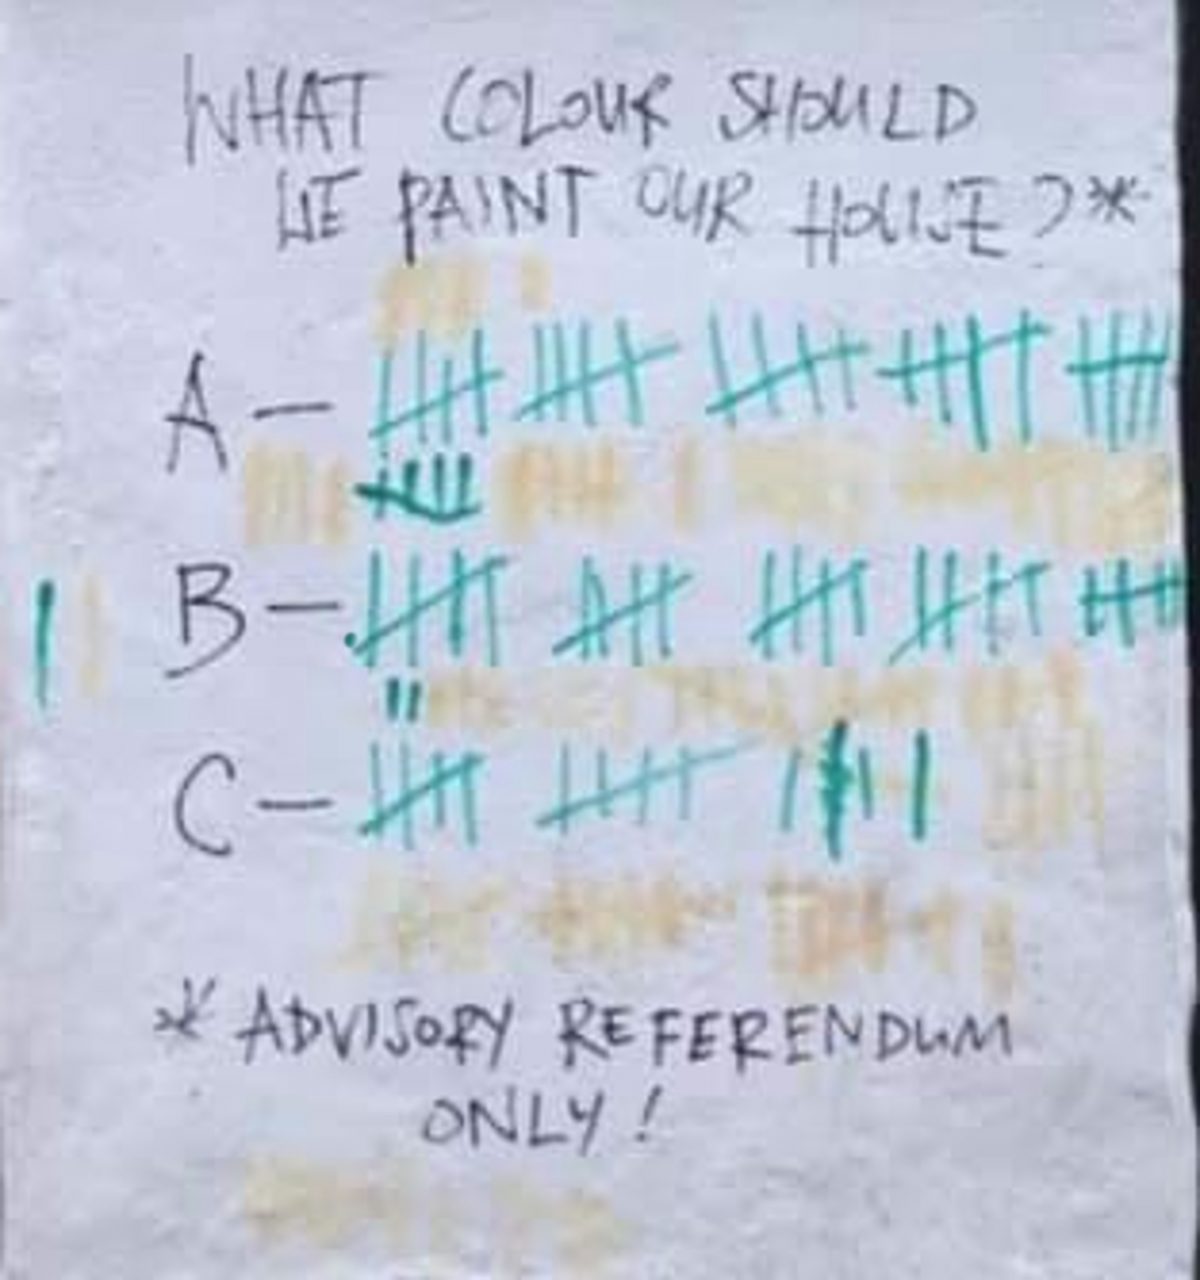 A photo of the votes per colour so far.